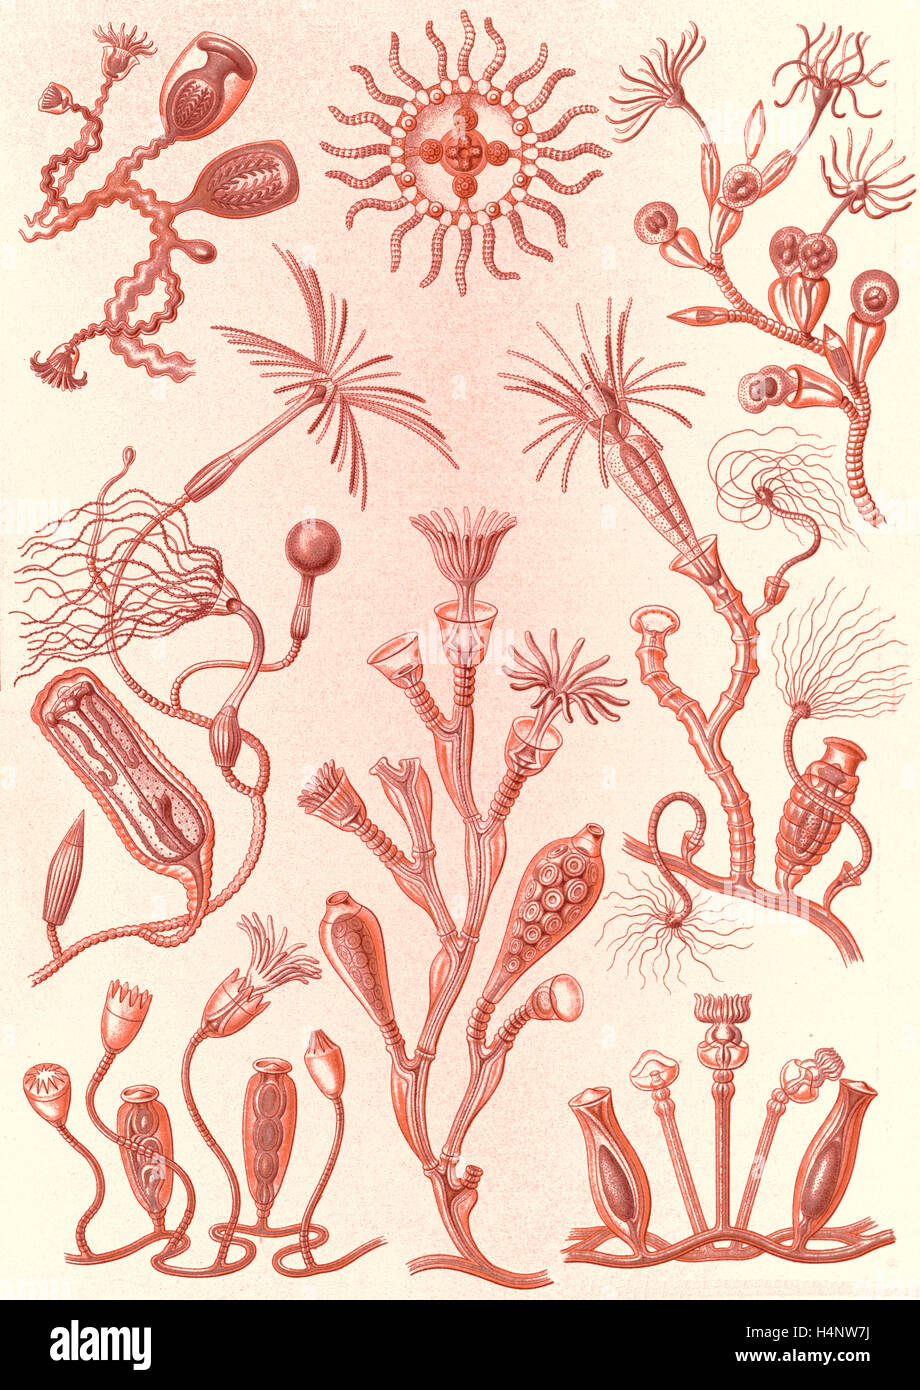 La figura mostra gli animali acquatici. Campanariae. - Glockenpolnpen, 1 stampa : Litografia a colori ; foglio 36 x 26 cm., 1904. Foto Stock